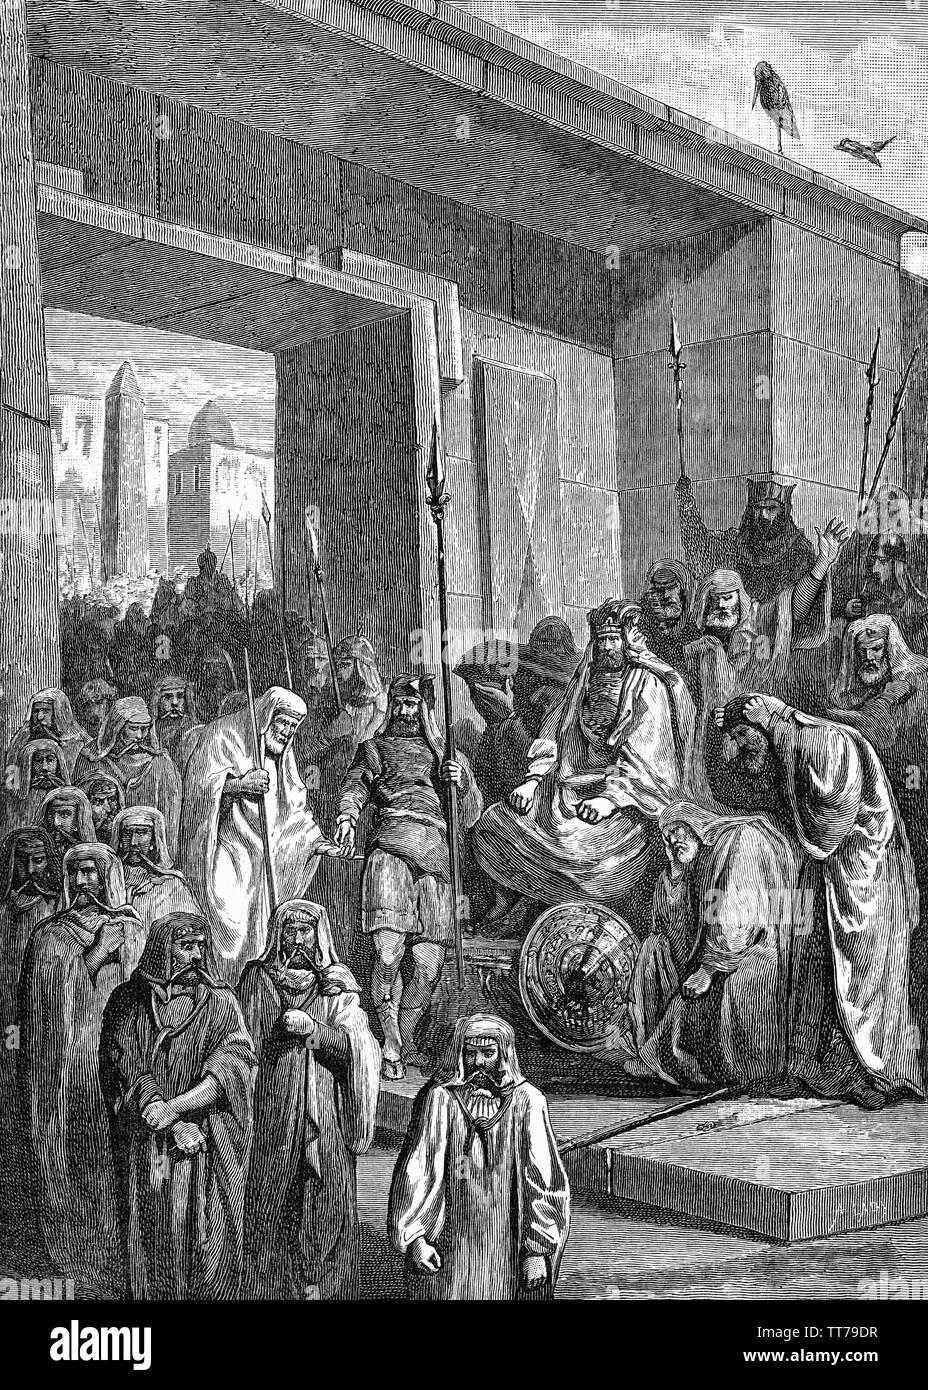 Ein Treffen zwischen Psammetich III, aka Psammetichus, dem letzten Pharao der 26. Dynastie Ägyptens von 526 v. Chr. bis 525 v. Chr. und King Cambyses II in Persien. Psammetich hatte Ägypten für nur sechs Monate ausgeschlossen, bevor er von einem Persischen Invasion seines Landes geführt von Cambyses II konfrontiert wurde und später in der Schlacht von Pelusium in 525 v. Chr. besiegt und floh nach Memphis, wo er gefangen genommen wurde. Der abgesetzte Pharao war, Susa, die in Ketten durchgeführt und später Selbstmord begangen. Stockfoto